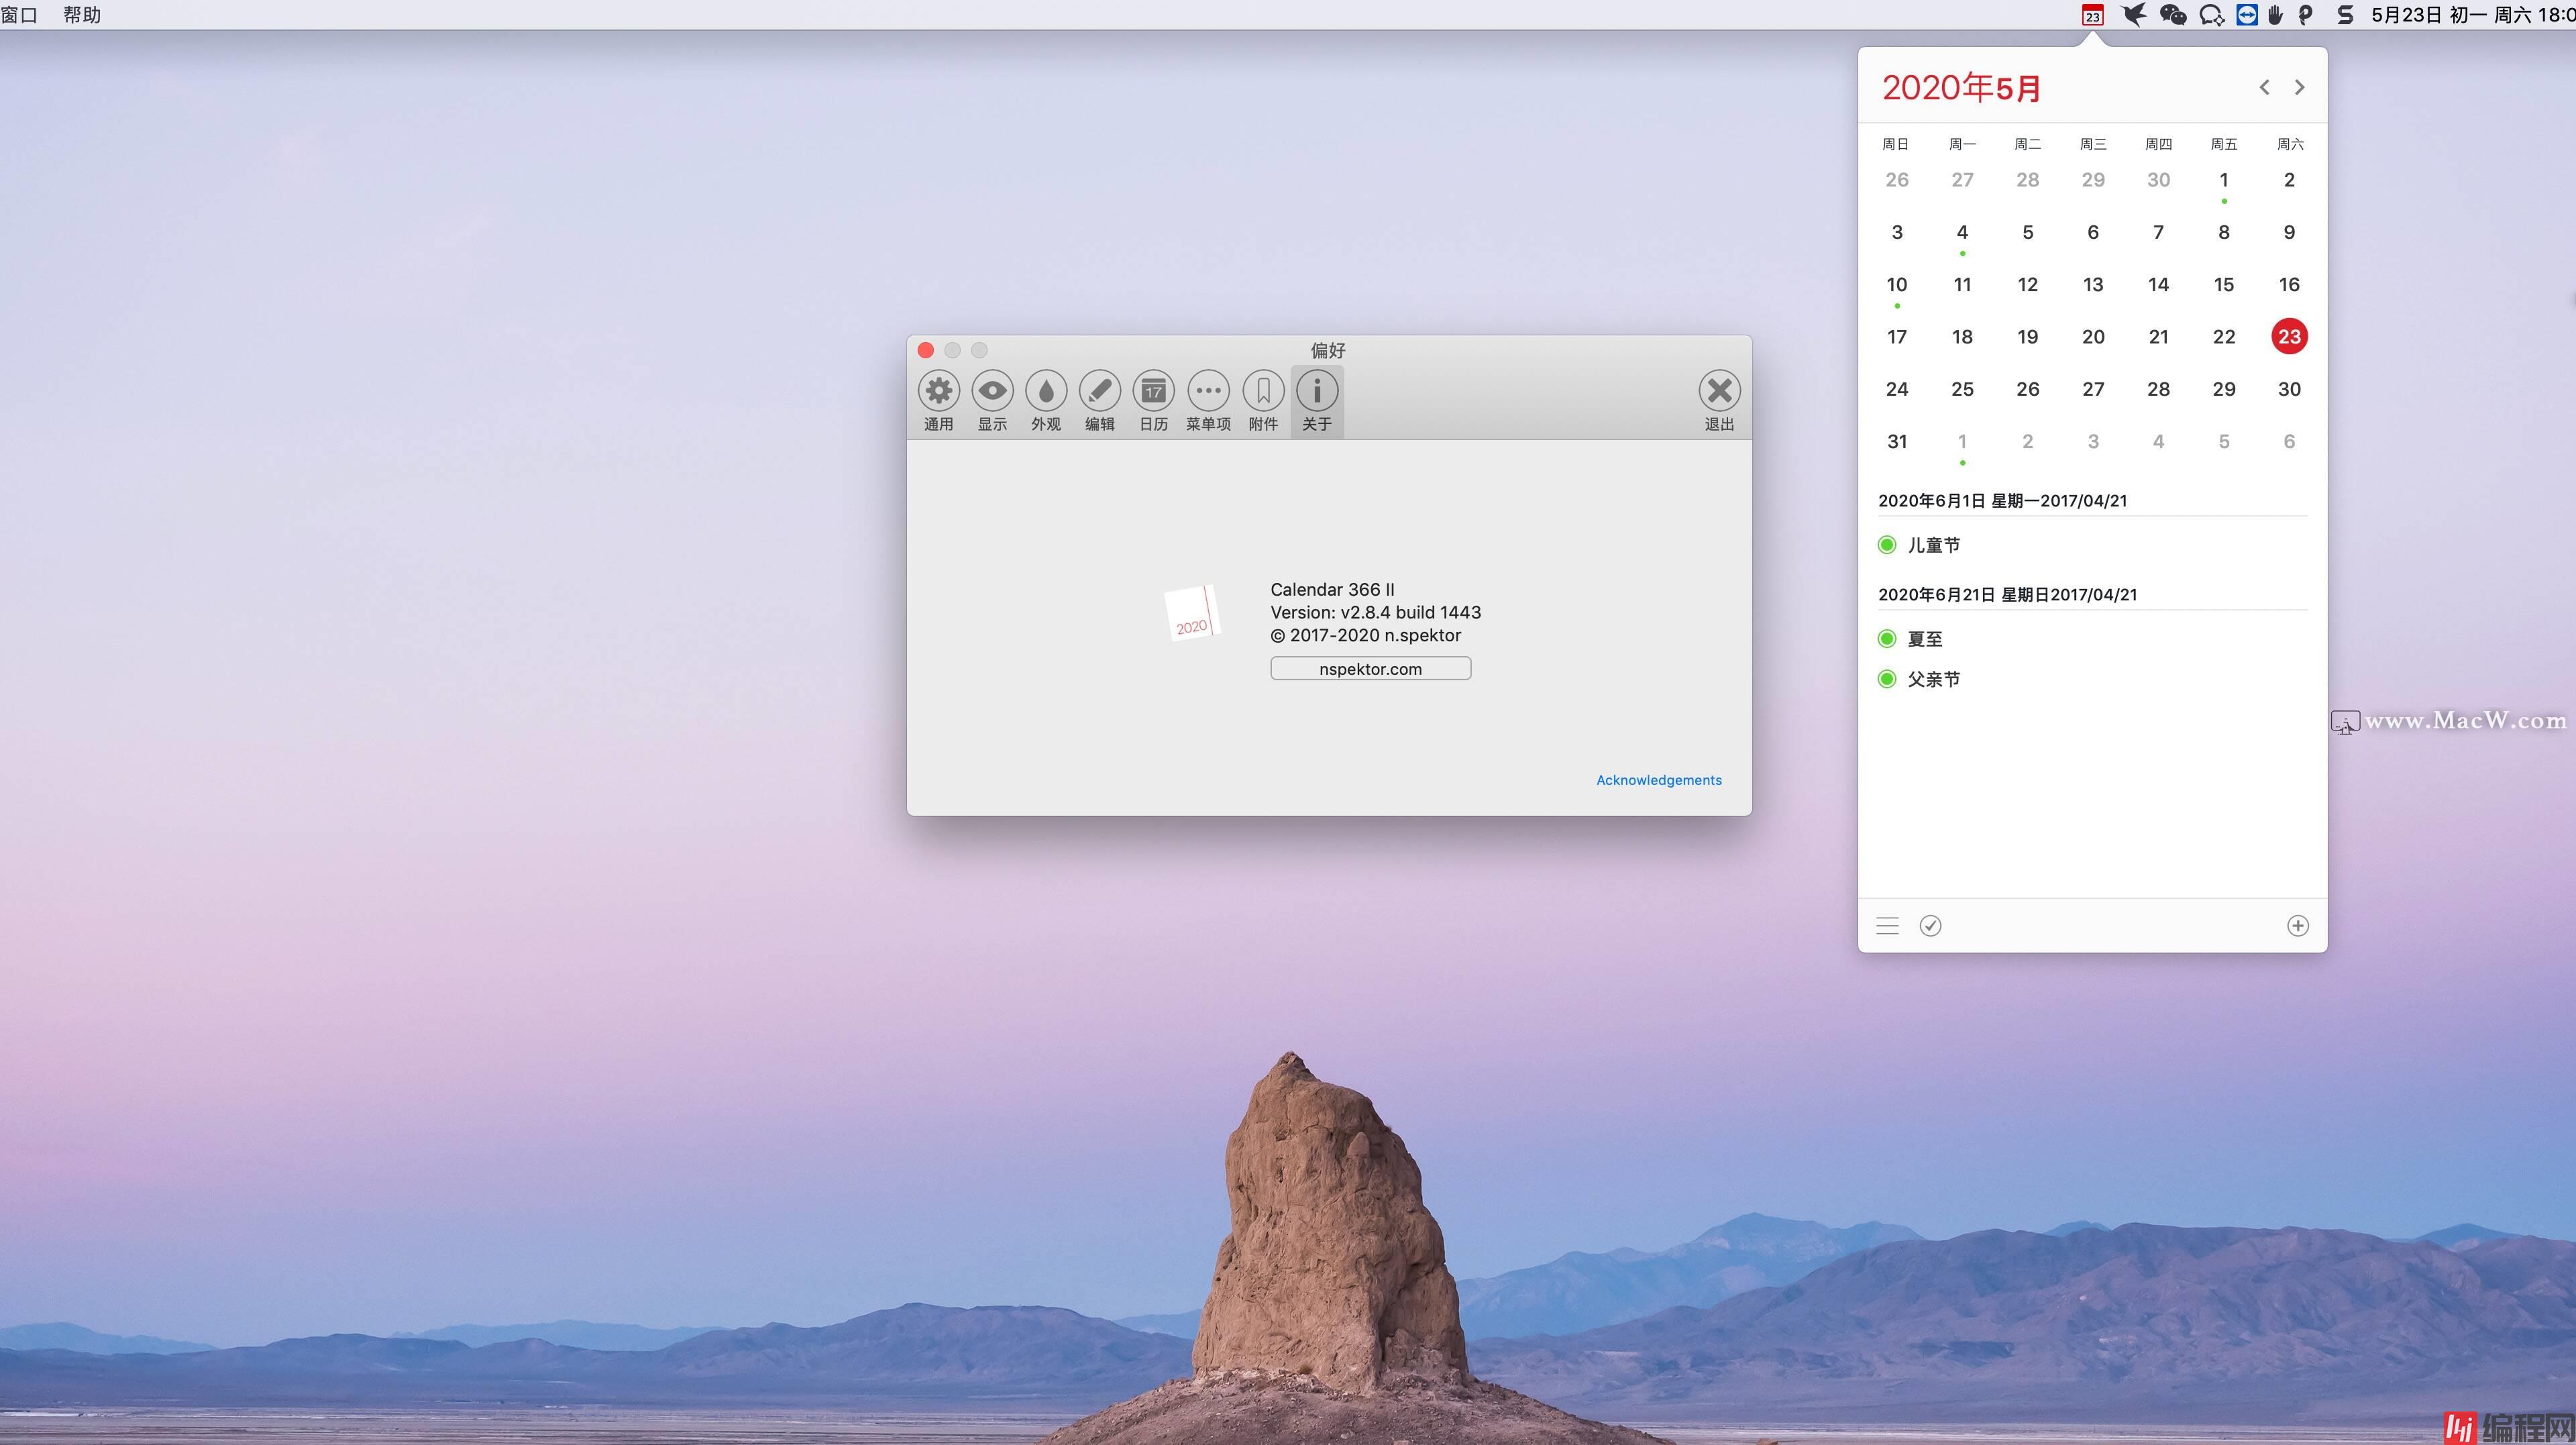 Calendar 366 II for Mac是一款什么工具